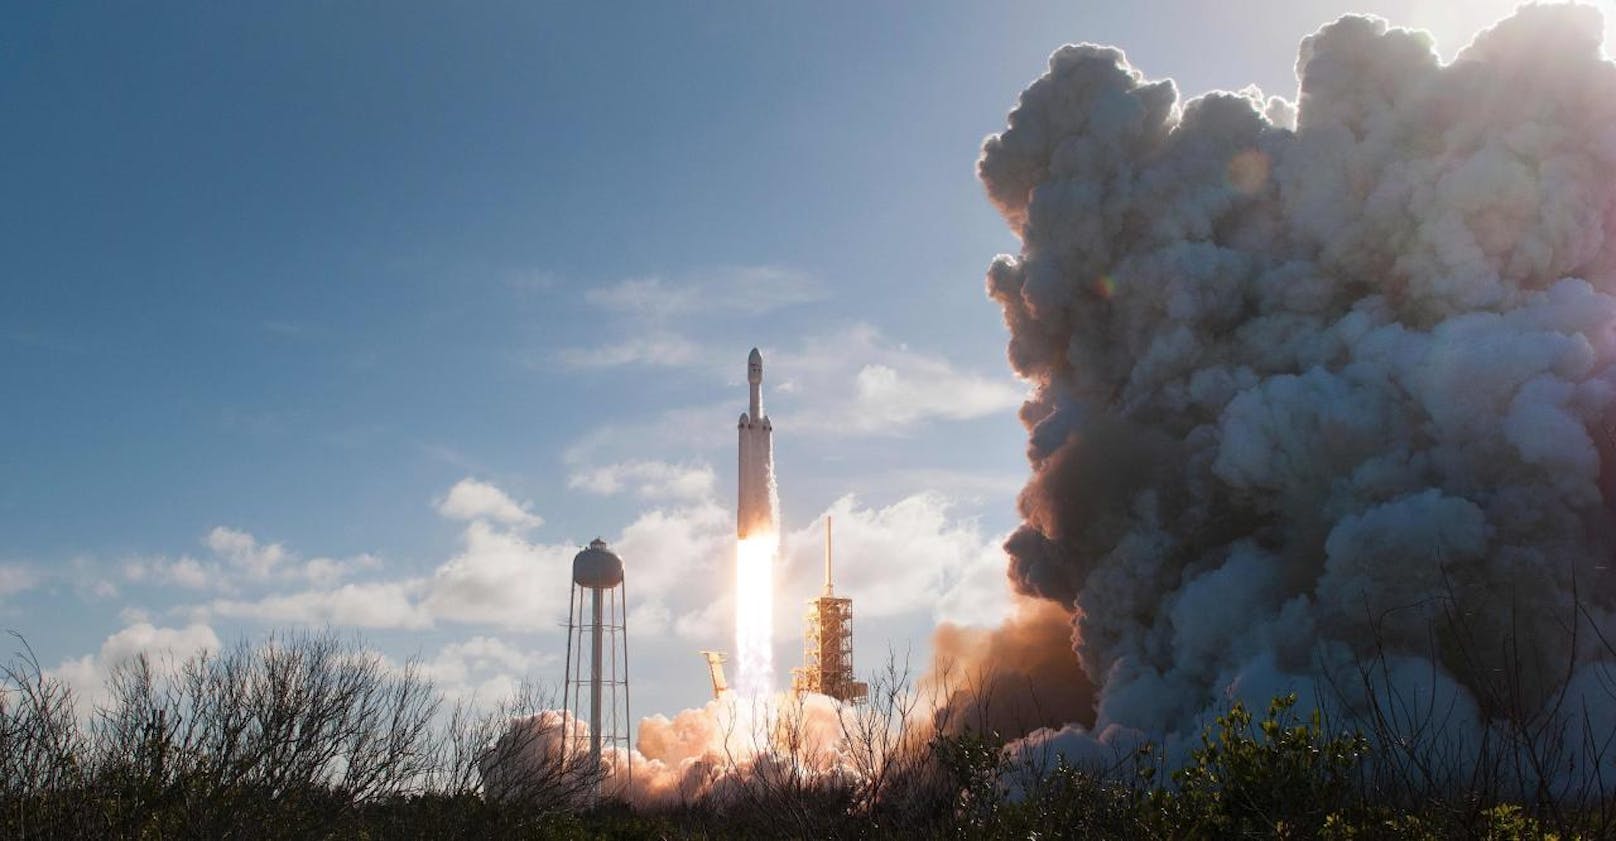 Die Falcon Heavy kann eine Ladung von fast 64 Tonnen transportieren und ist aktuell die stärkste operierende Weltraumrakete der Welt.